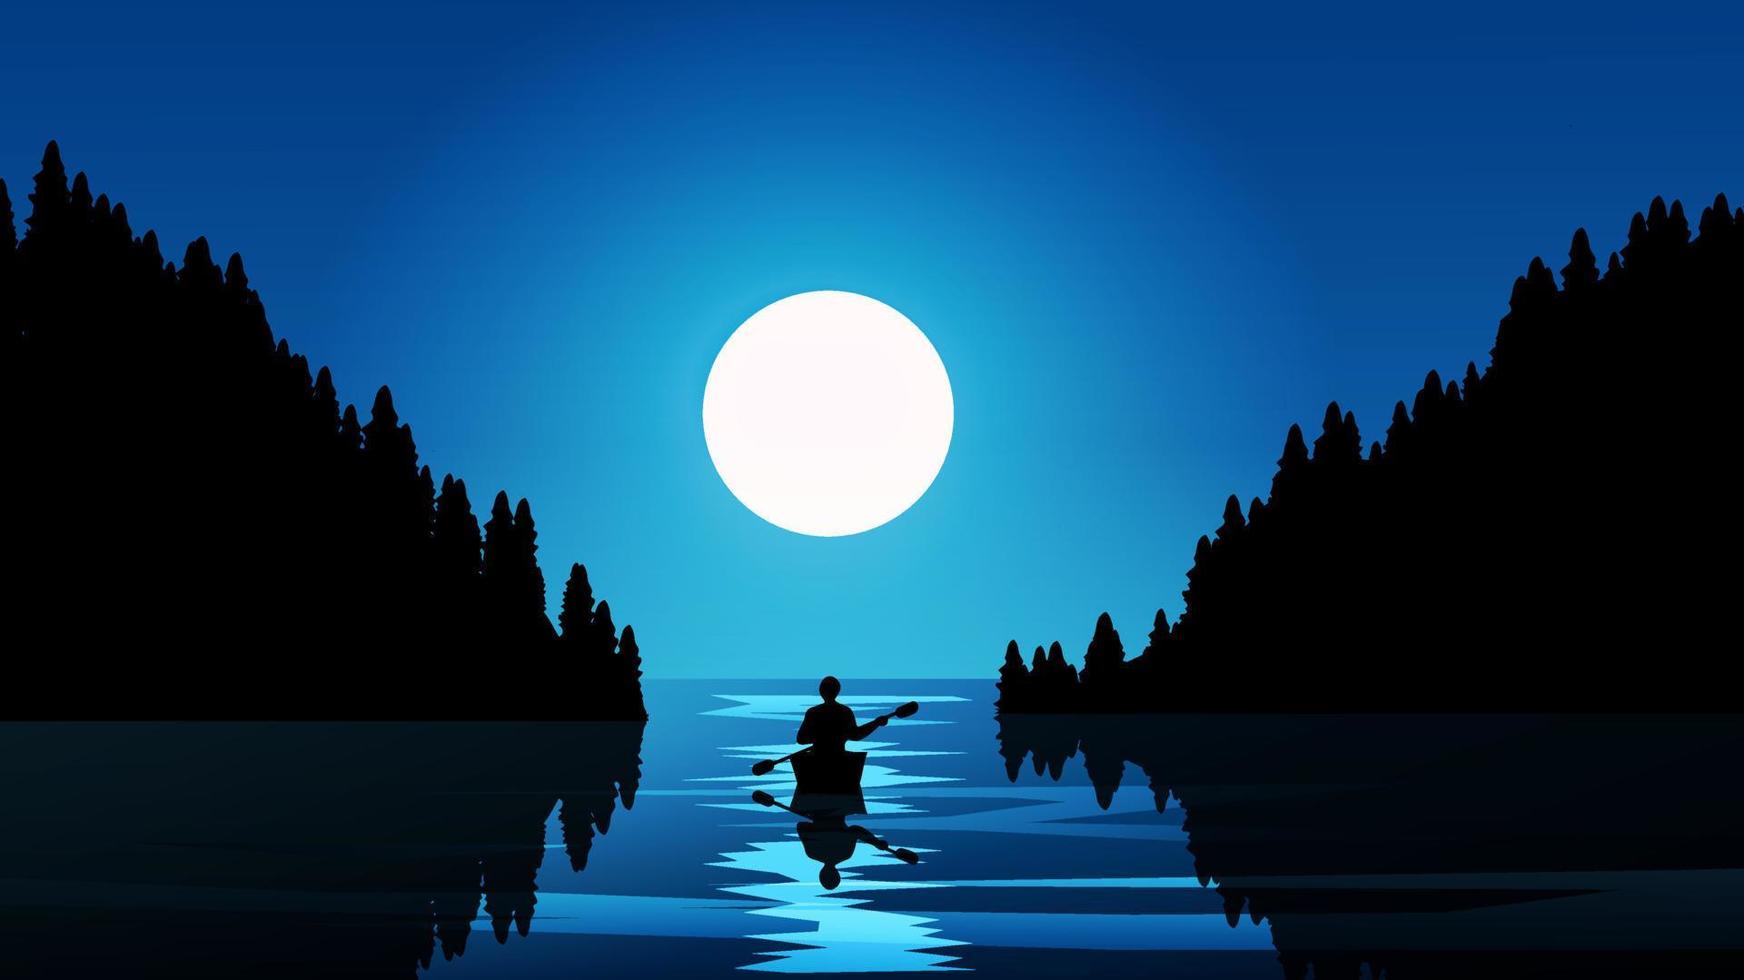 Full moon in coast with a man on canoe vector